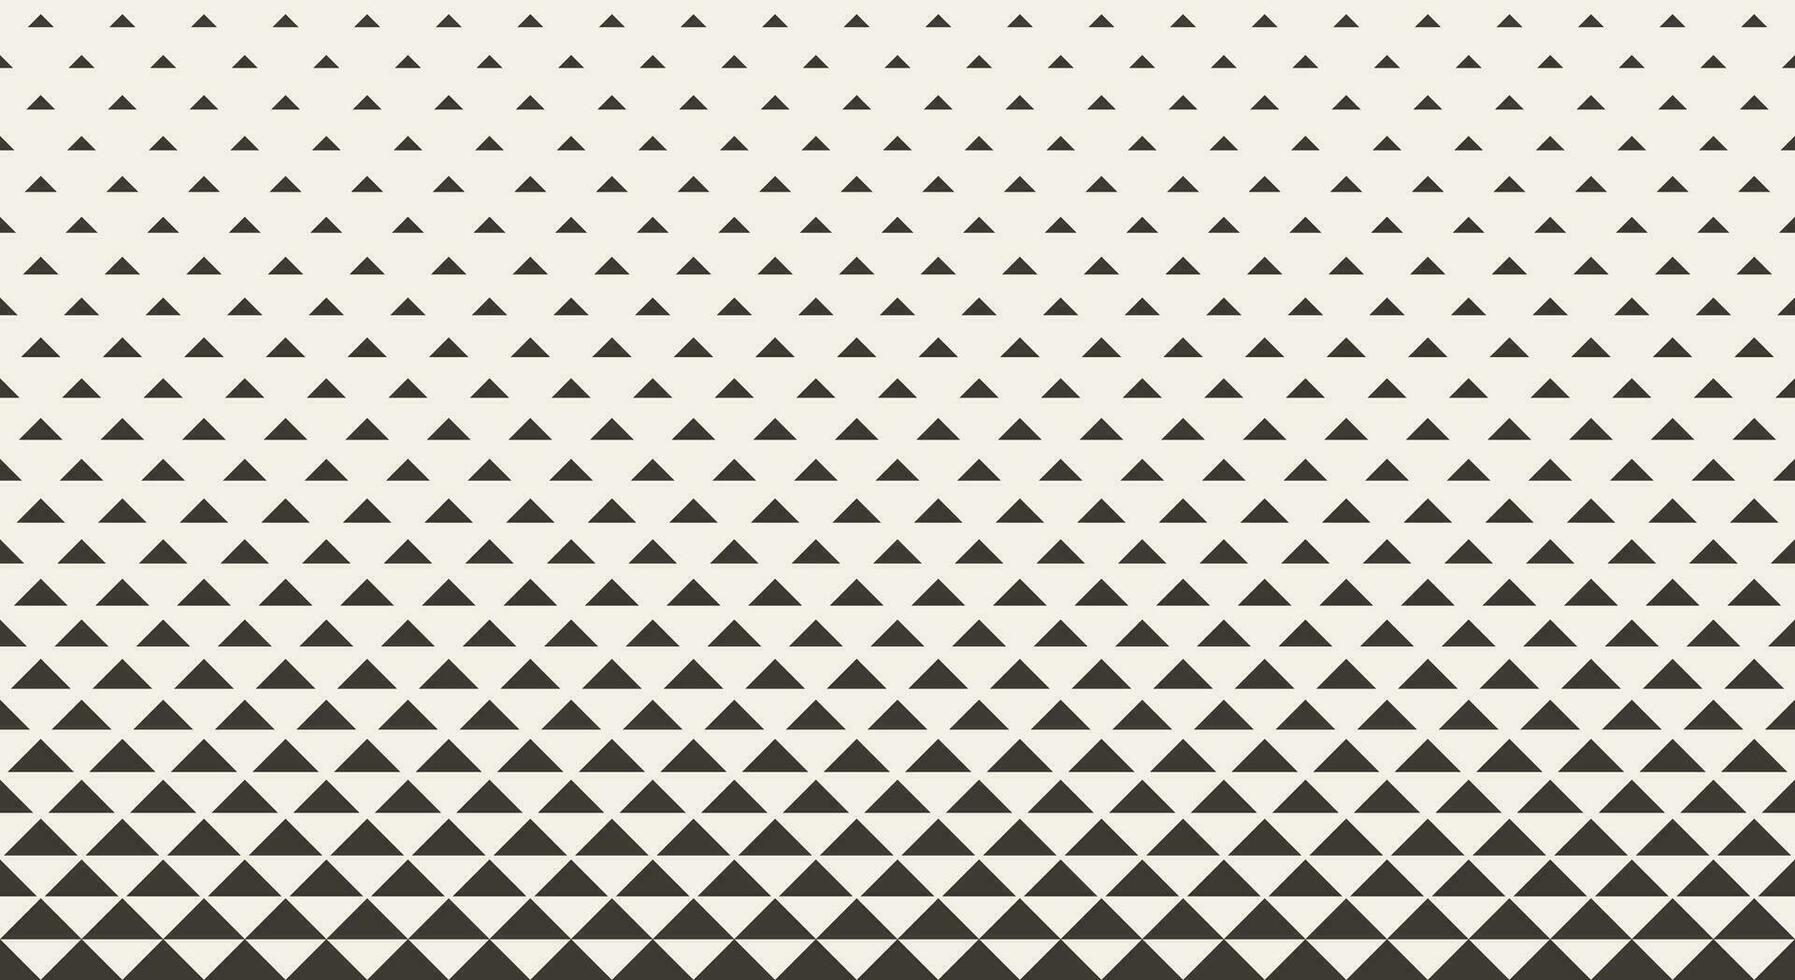 schwarz und Weiß Muster von Quadrate Gradient Halbton Rand zum drucken und Dekoration. Vektor Illustration.